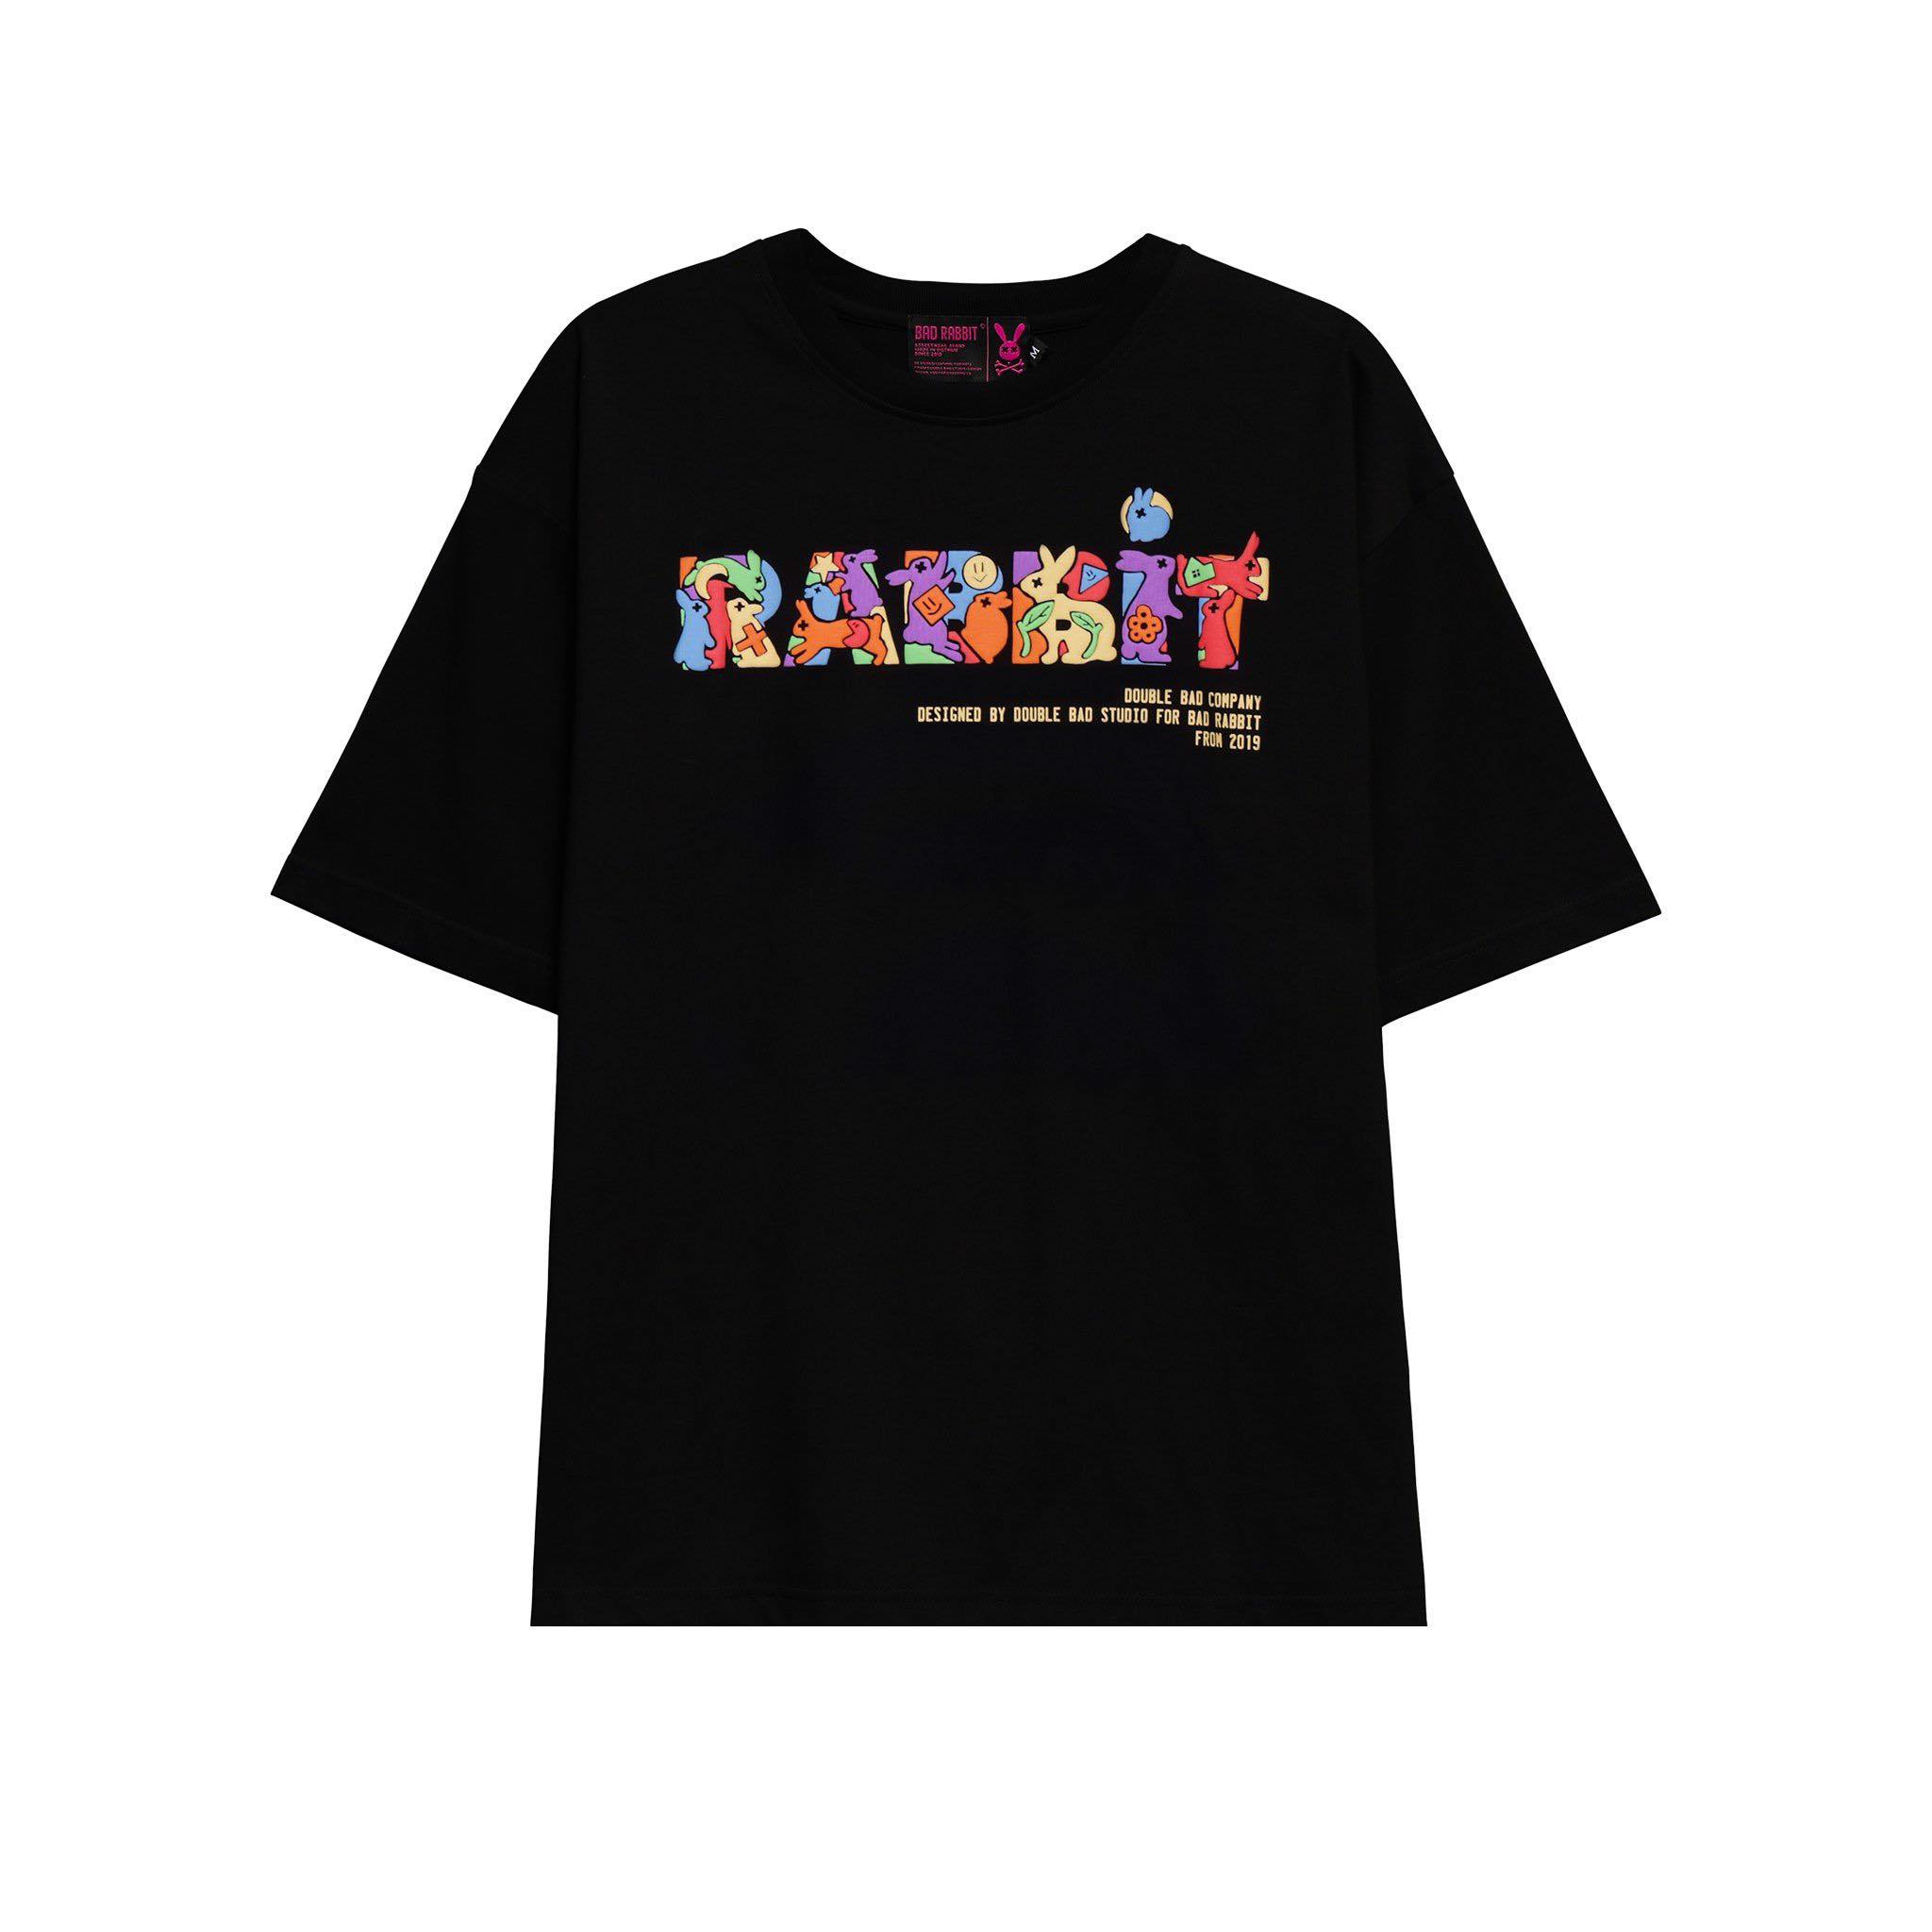 Áo thun Nam Nữ Bad Rabbit FULL RABBIT 100% Cotton - Local Brand Chính Hãng